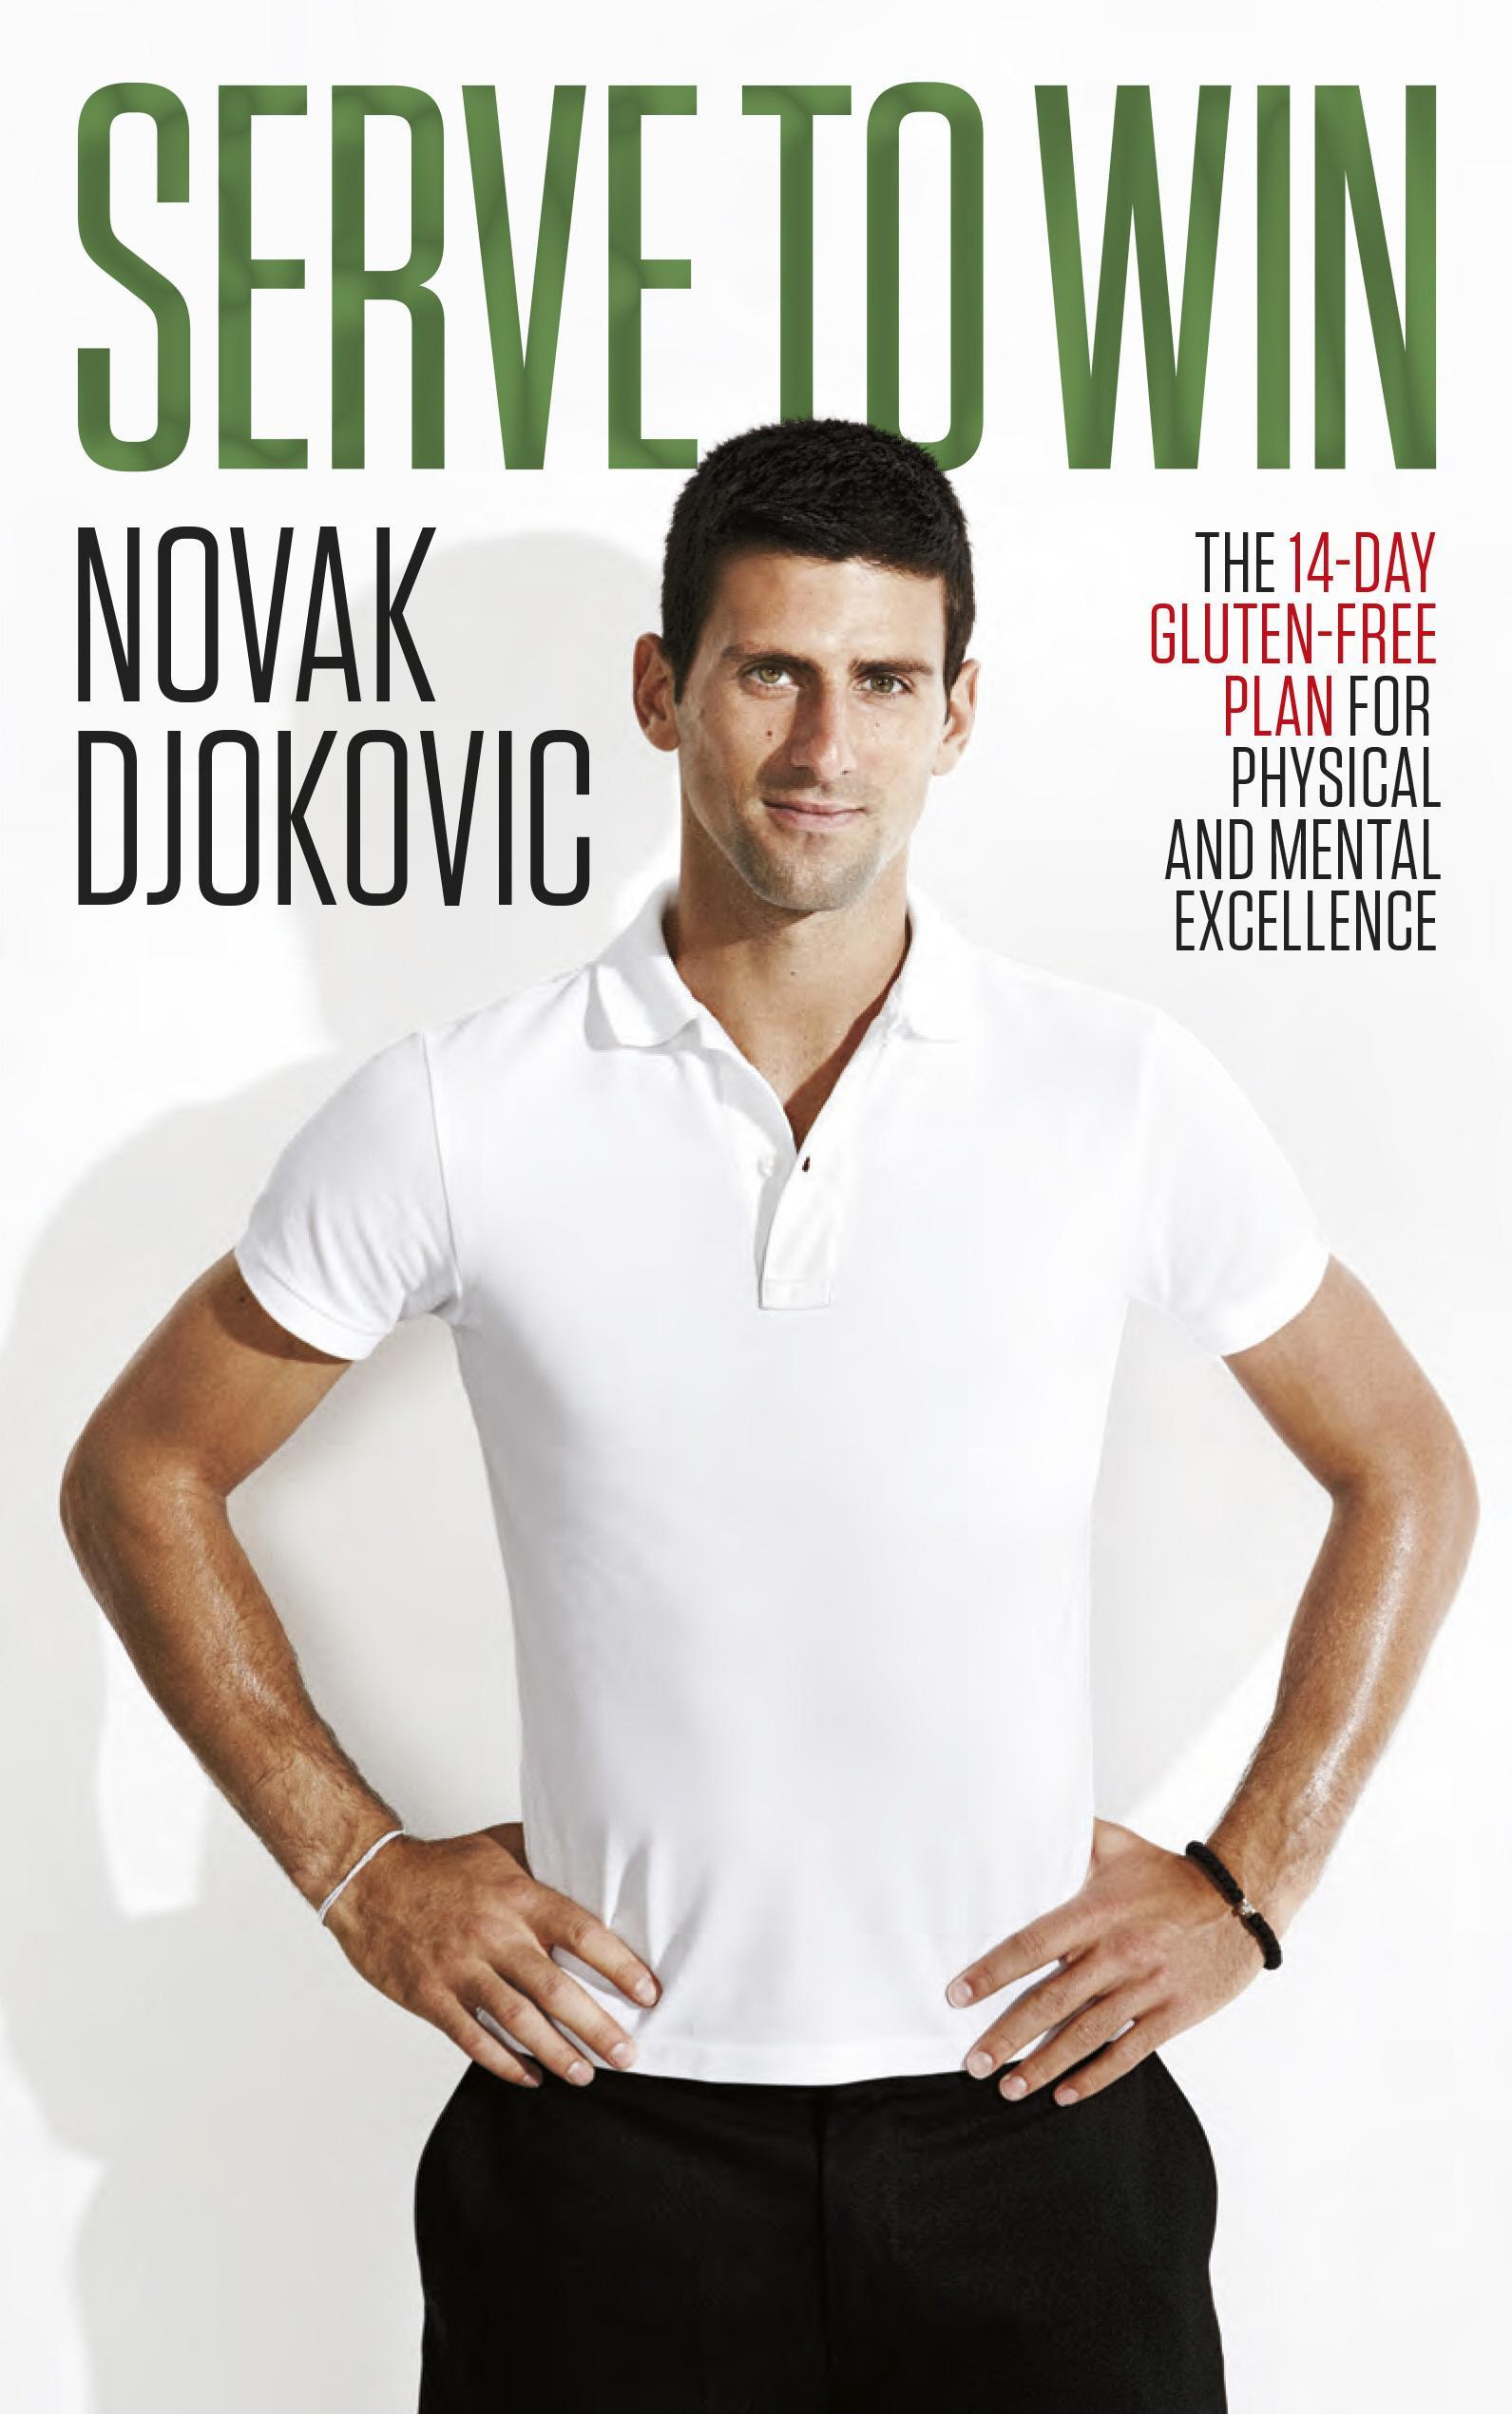 Serve To Win - Novak Djokovic